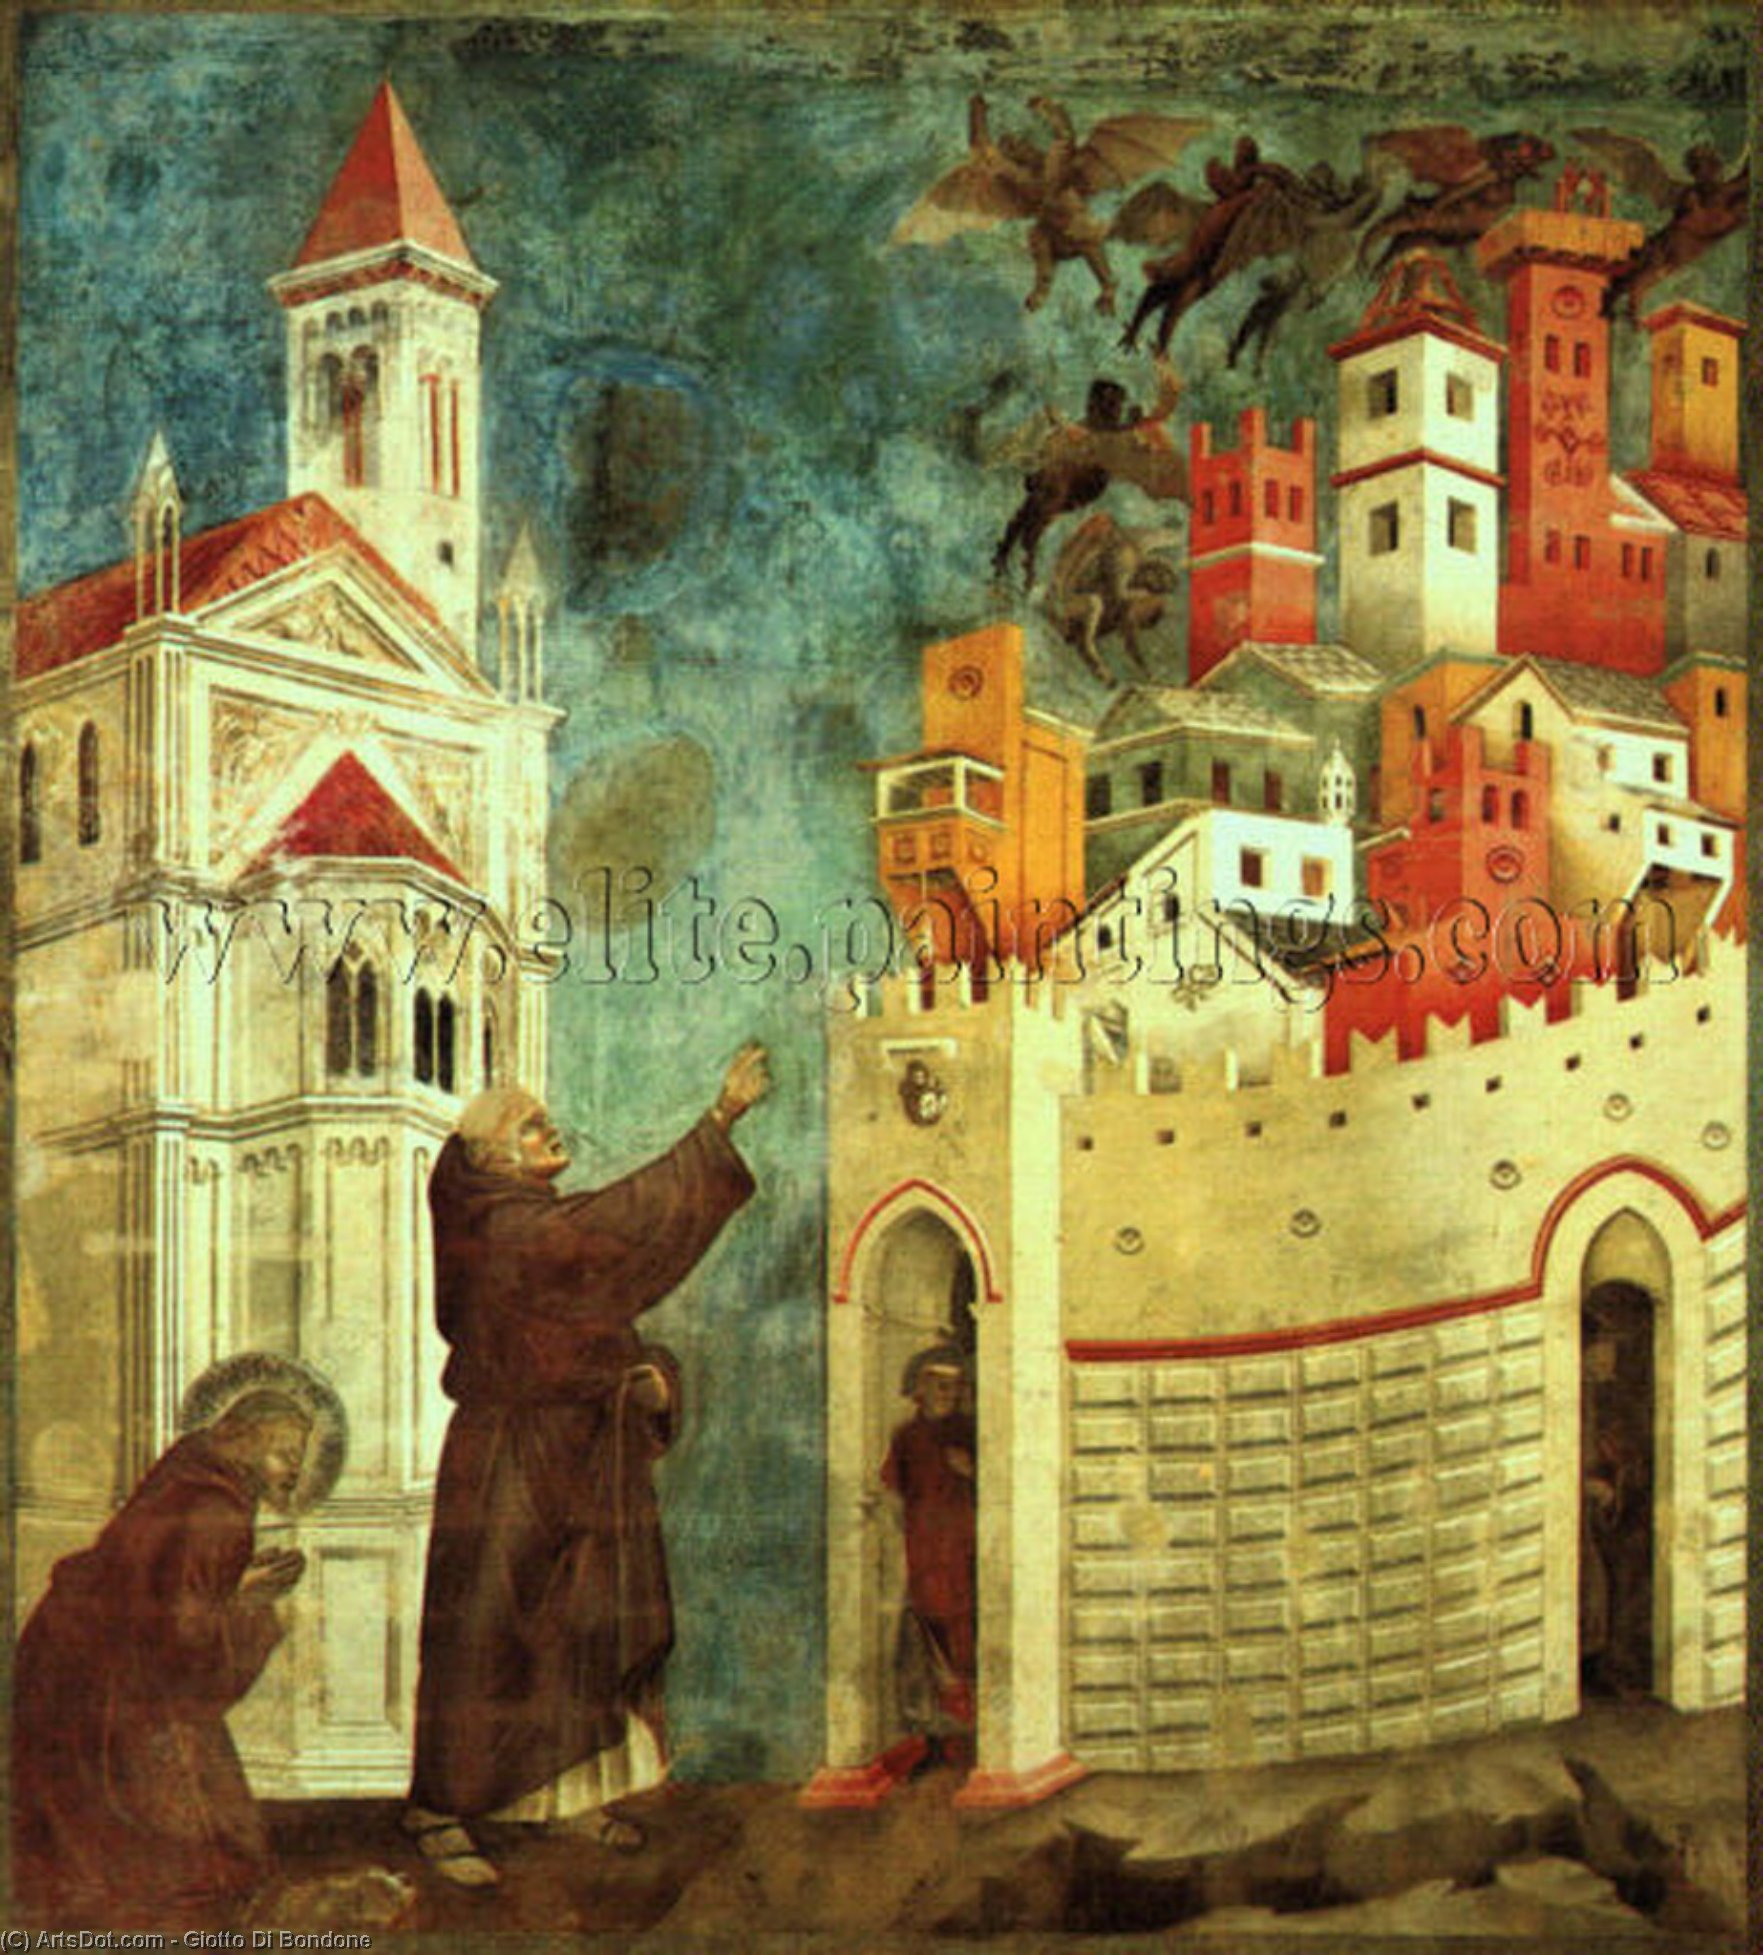 WikiOO.org - Encyclopedia of Fine Arts - Maleri, Artwork Giotto Di Bondone - The Devils Cast Out of Arezzo, before 1300, fresco, U